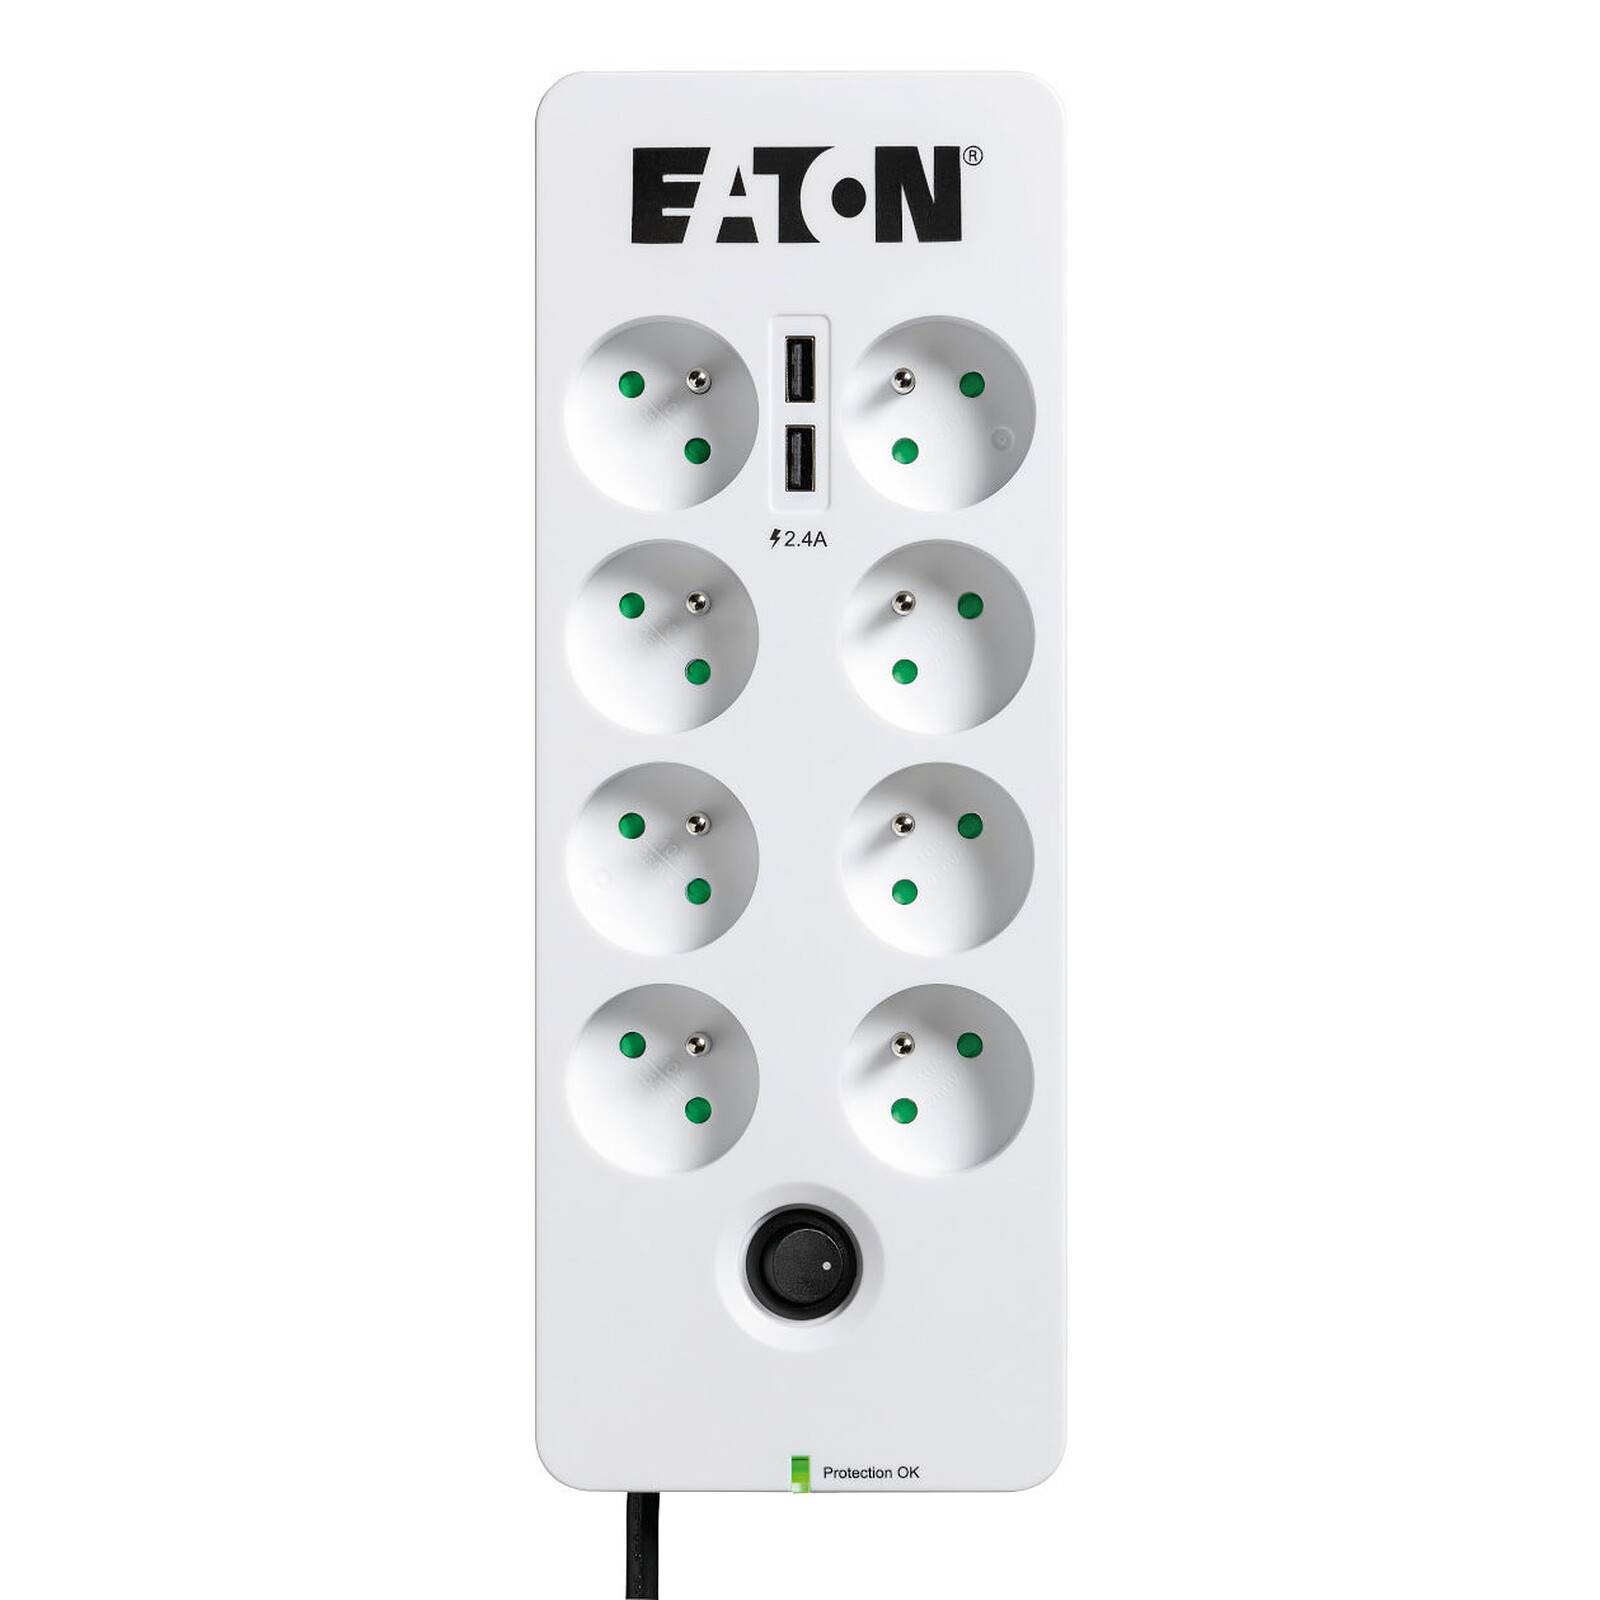 Caja de protección Eaton 8 Tel USB ES - Toma pararrayos - LDLC